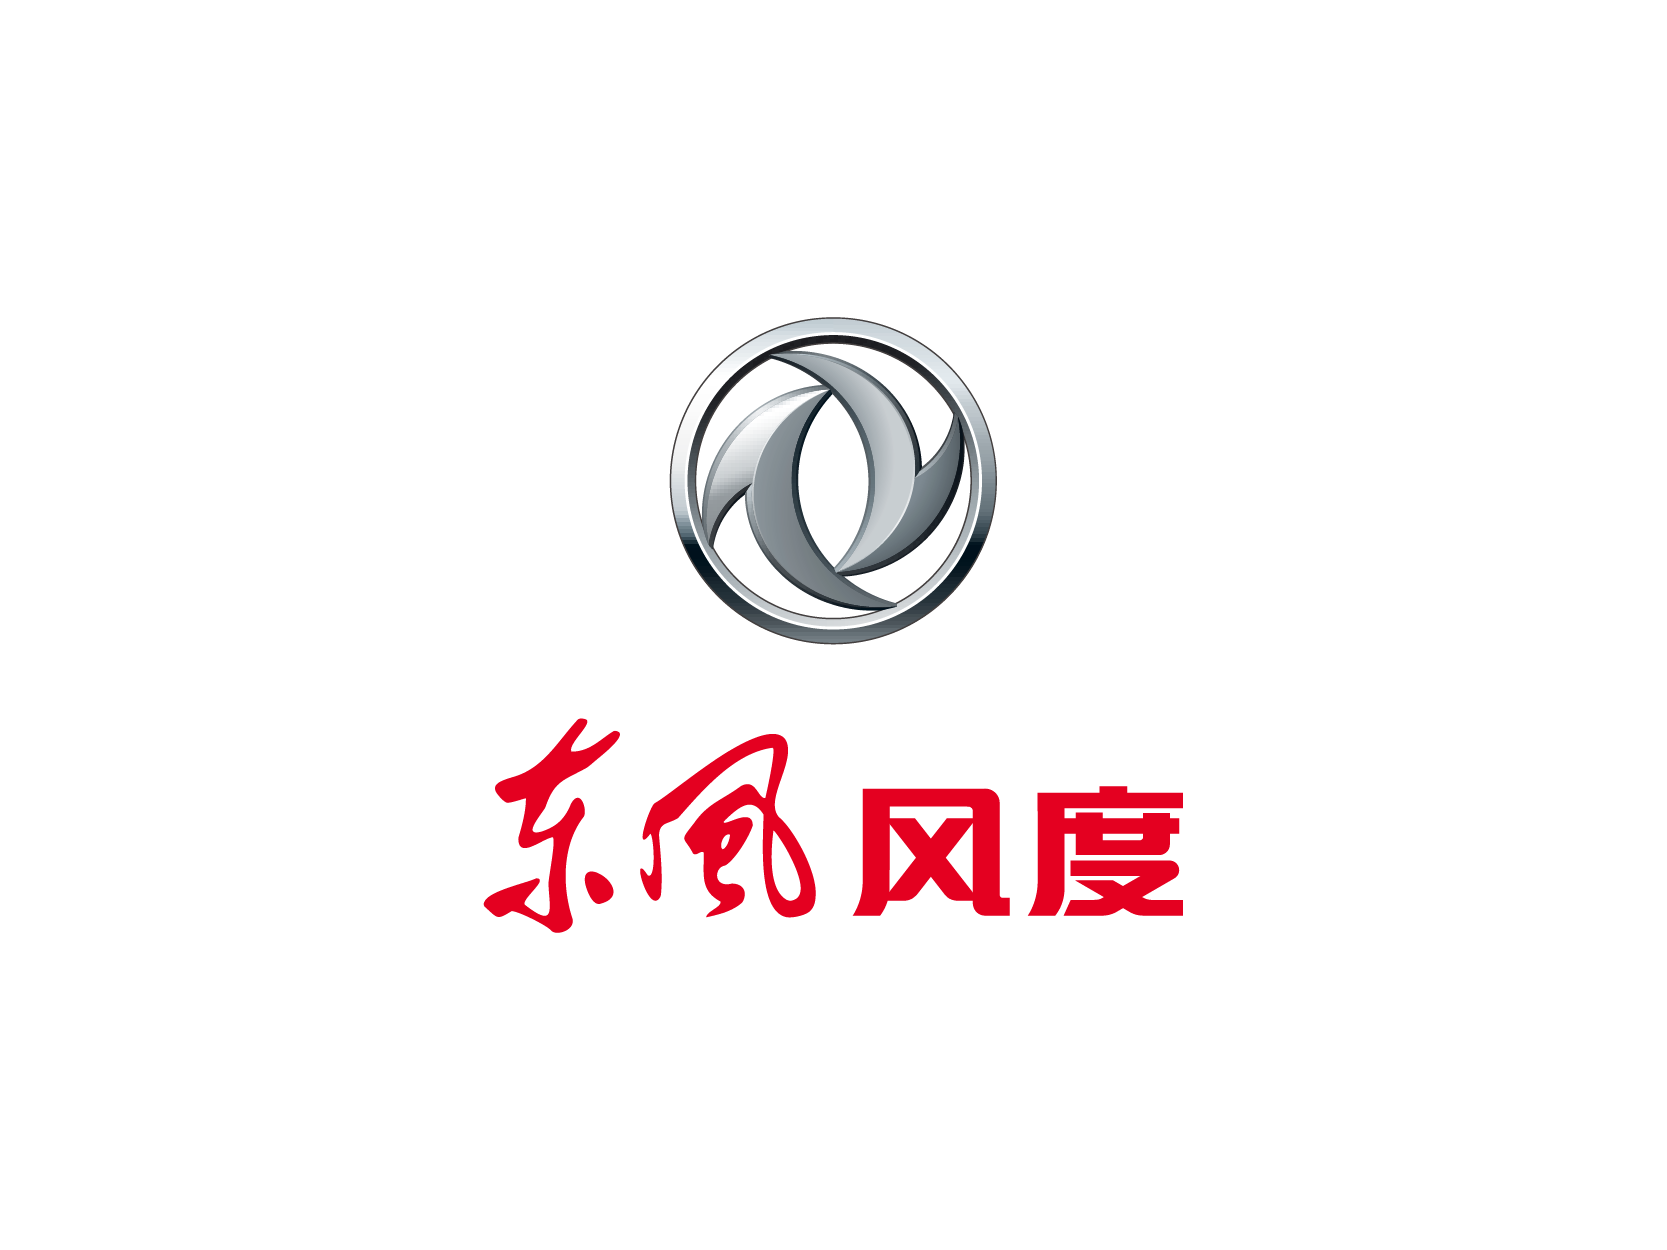 東風汽車logo內涵賞析 - 雪花新闻